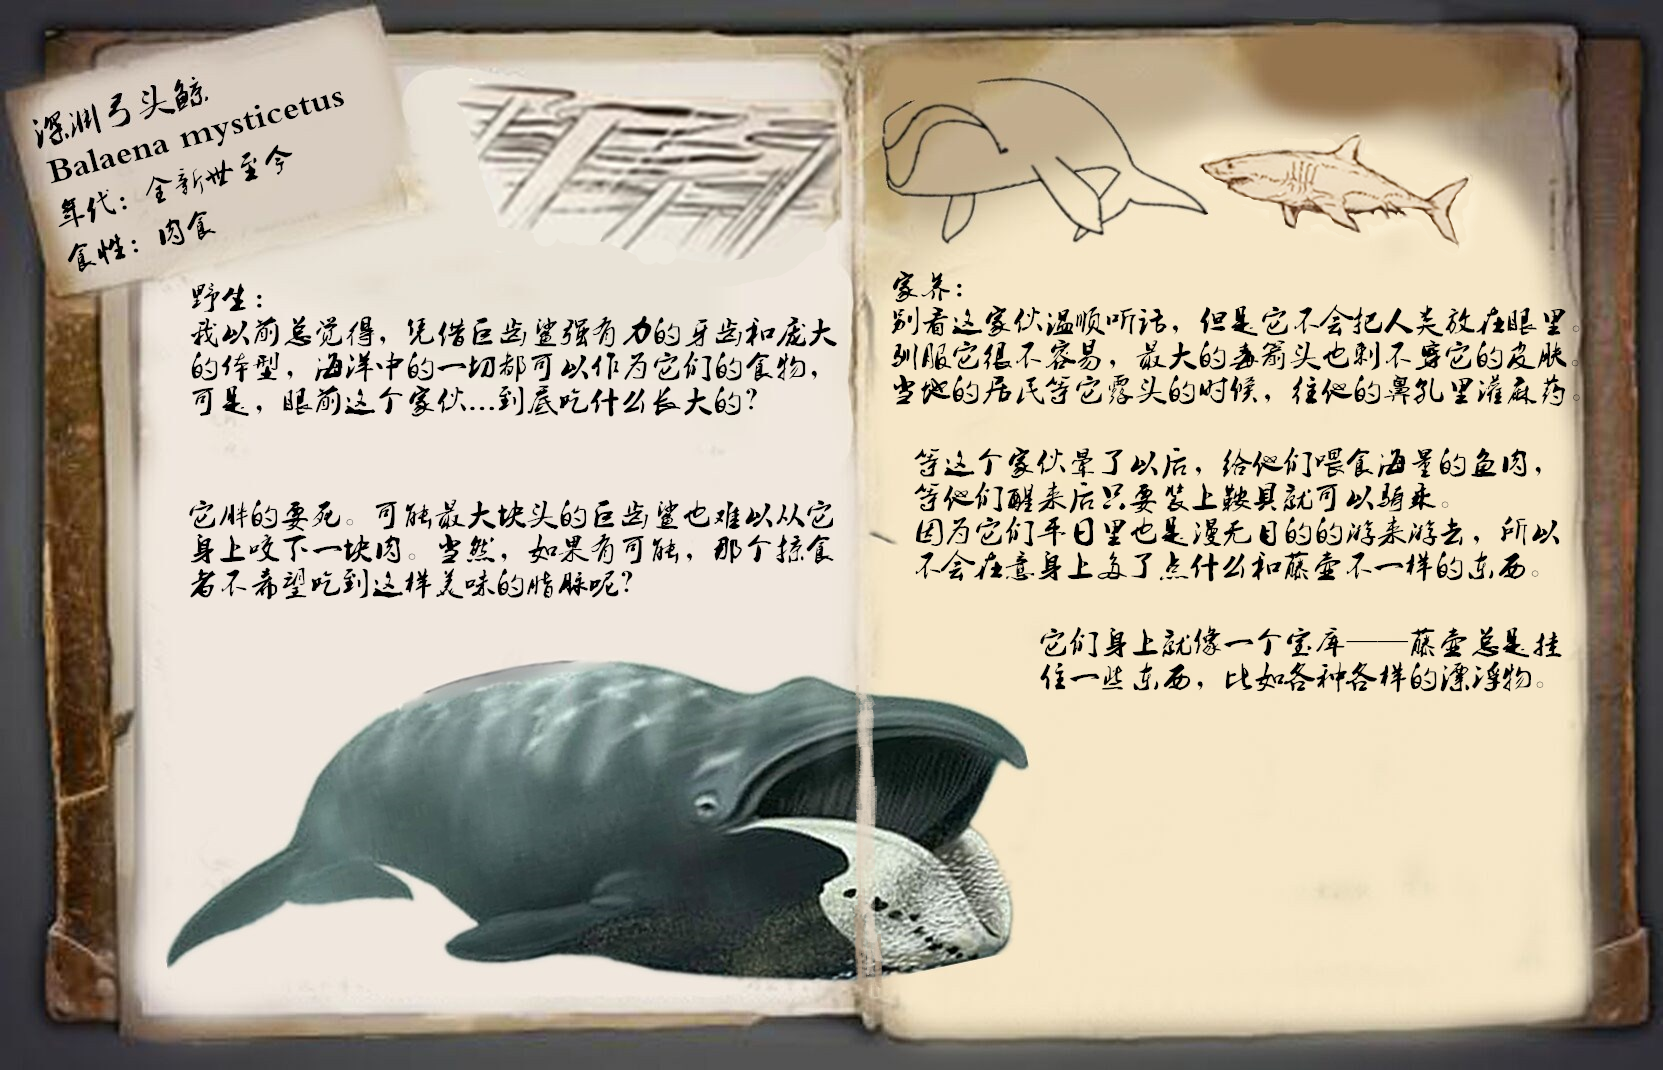 方舟的美丽新世界:深渊弓头鲸